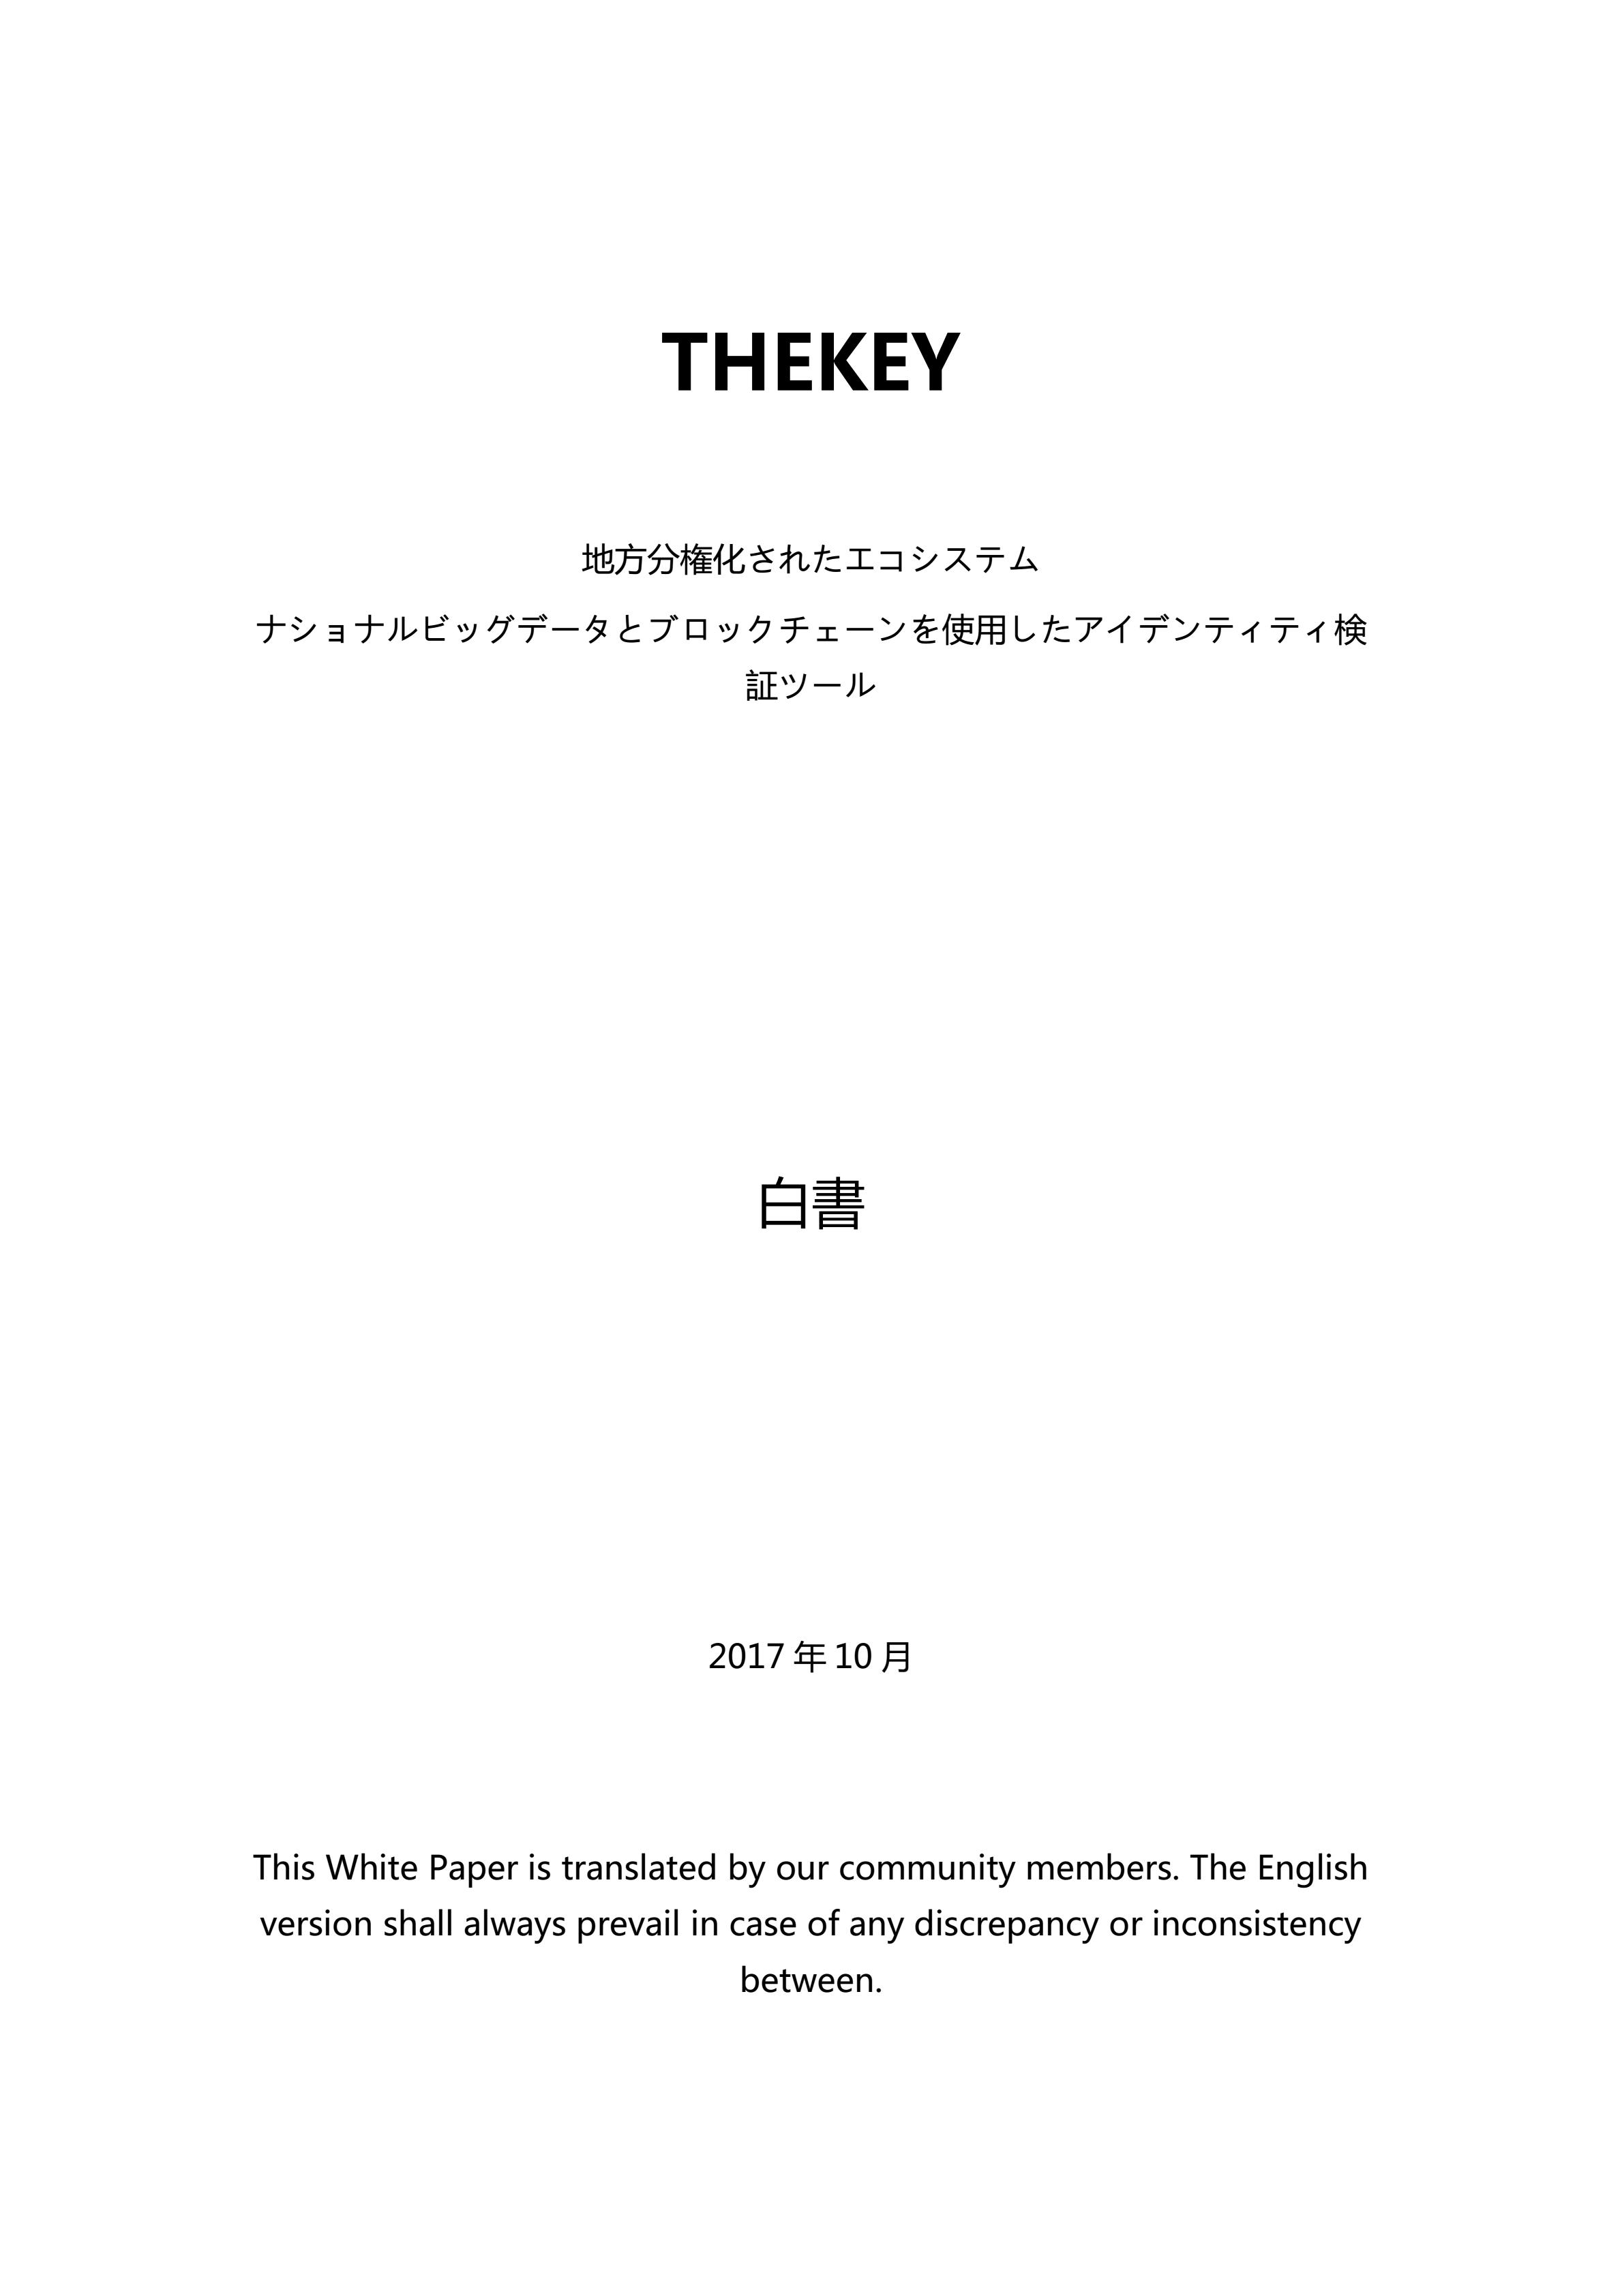 TKY_THEKEY_WHITE_PAPER_JAPANESE_00.jpg